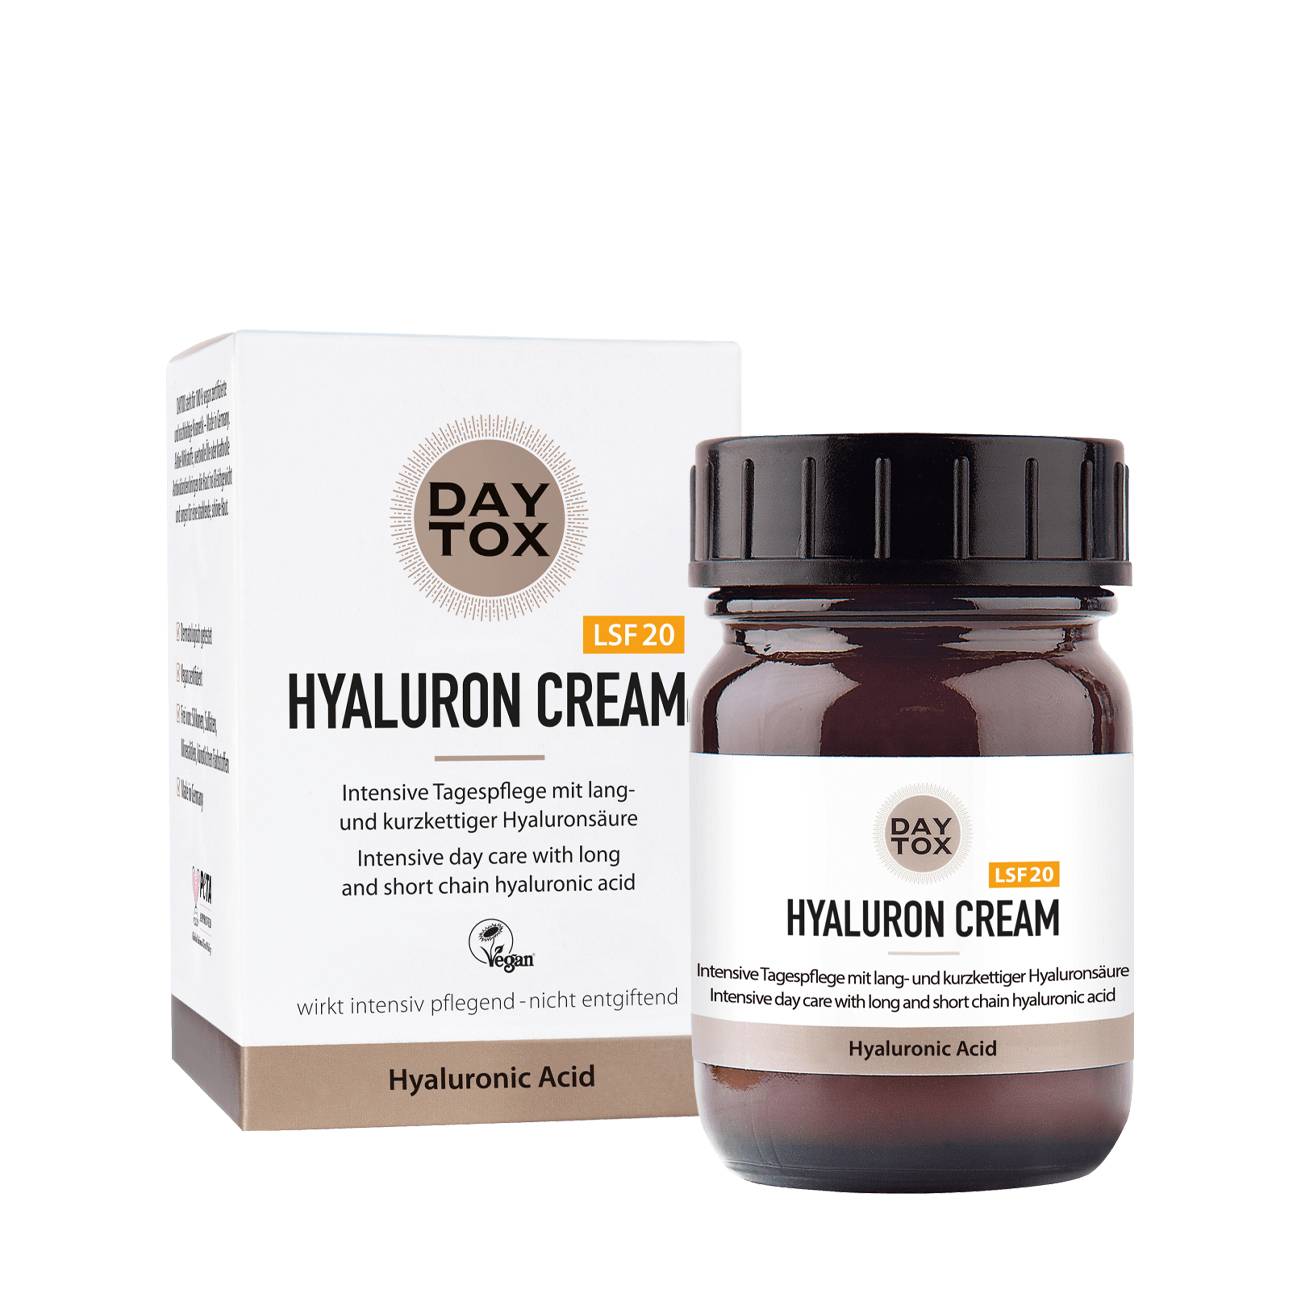 Hyaluron Cream 50 ml original Daytox bestvalue